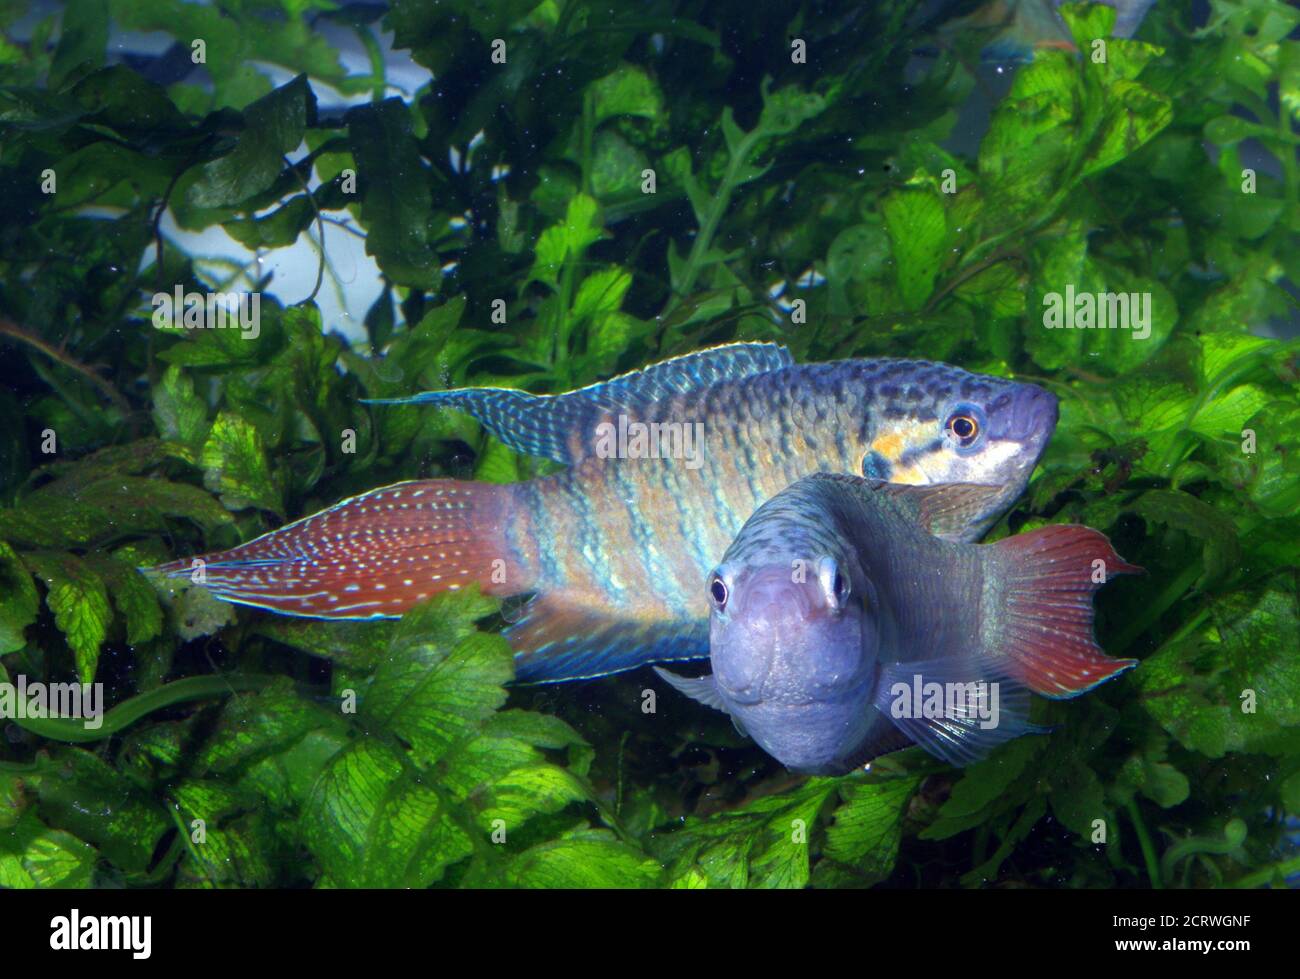 Pair of Paradise fish, Macropodus opercularis Stock Photo